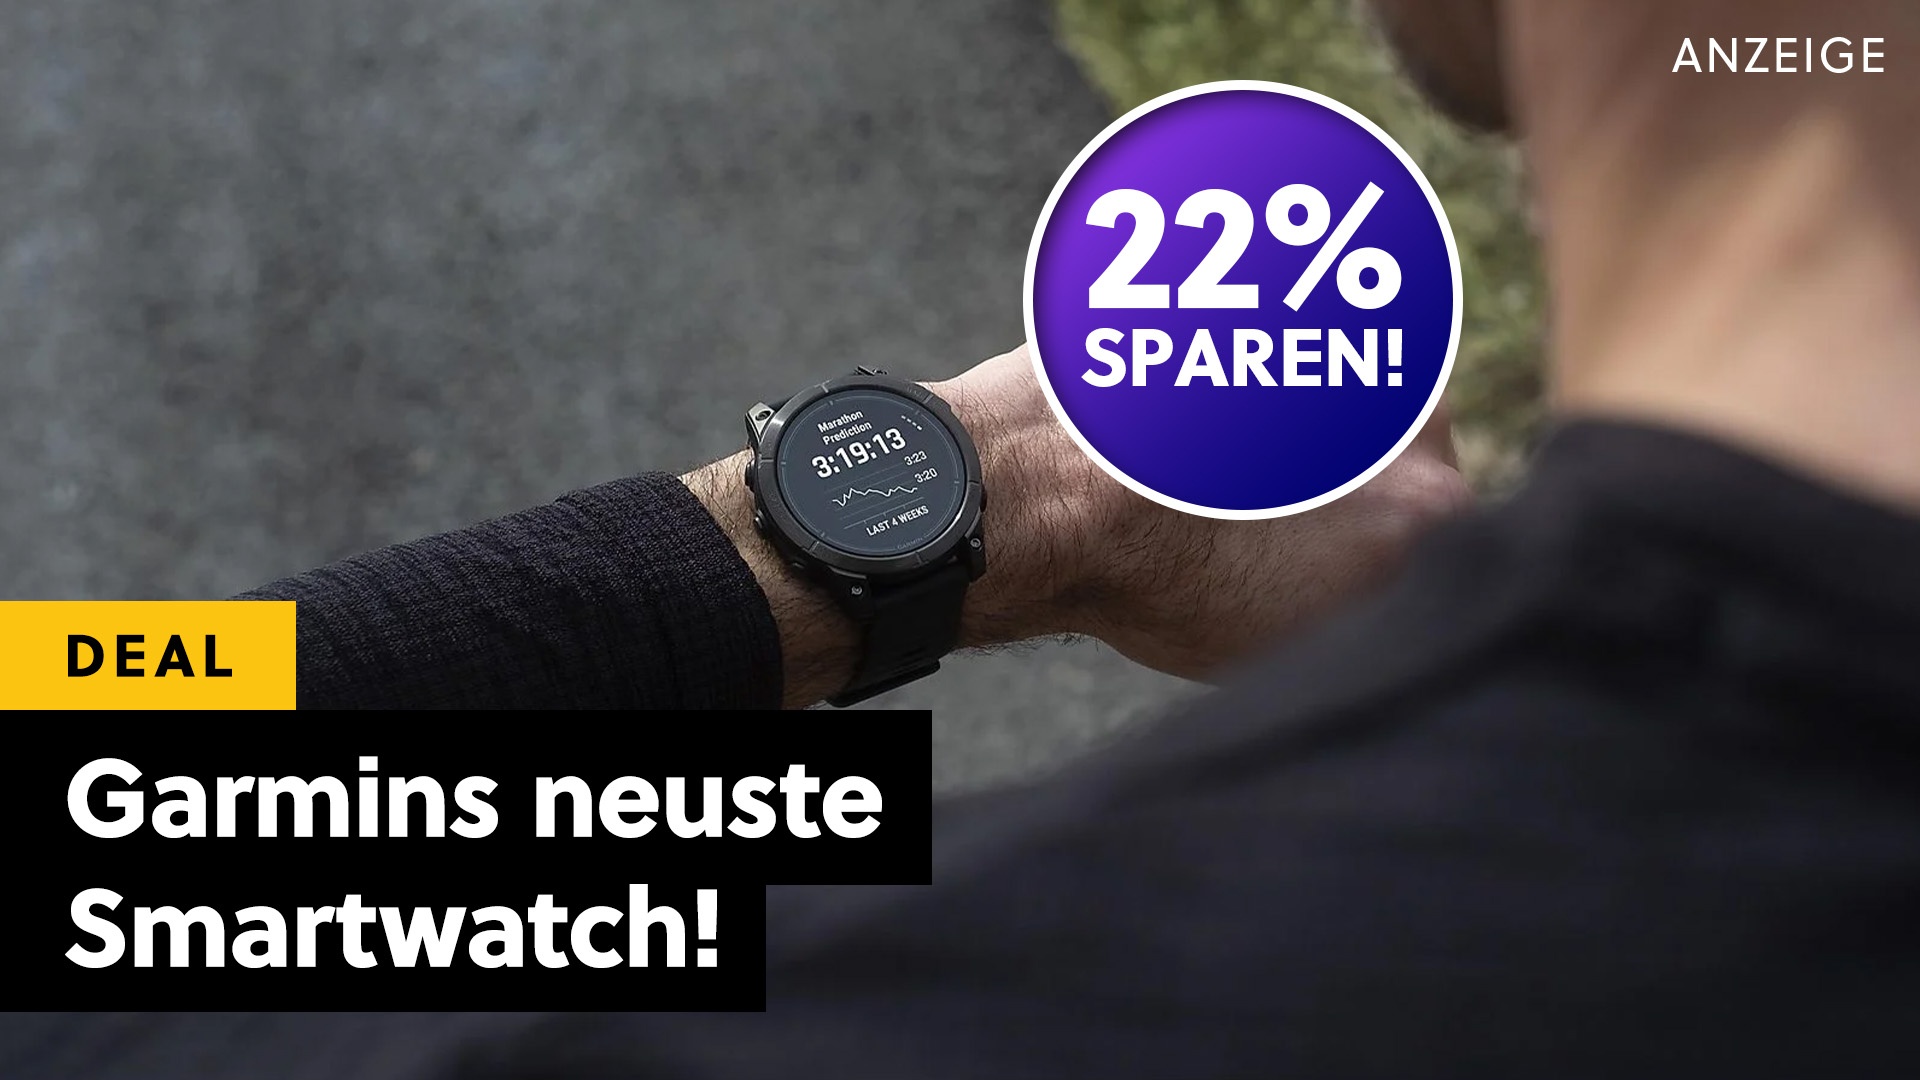 Die neueste Smartwatch von Garmin kann fast alles, was euer Handy auch kann und sie ist gerade richtig günstig zu haben!